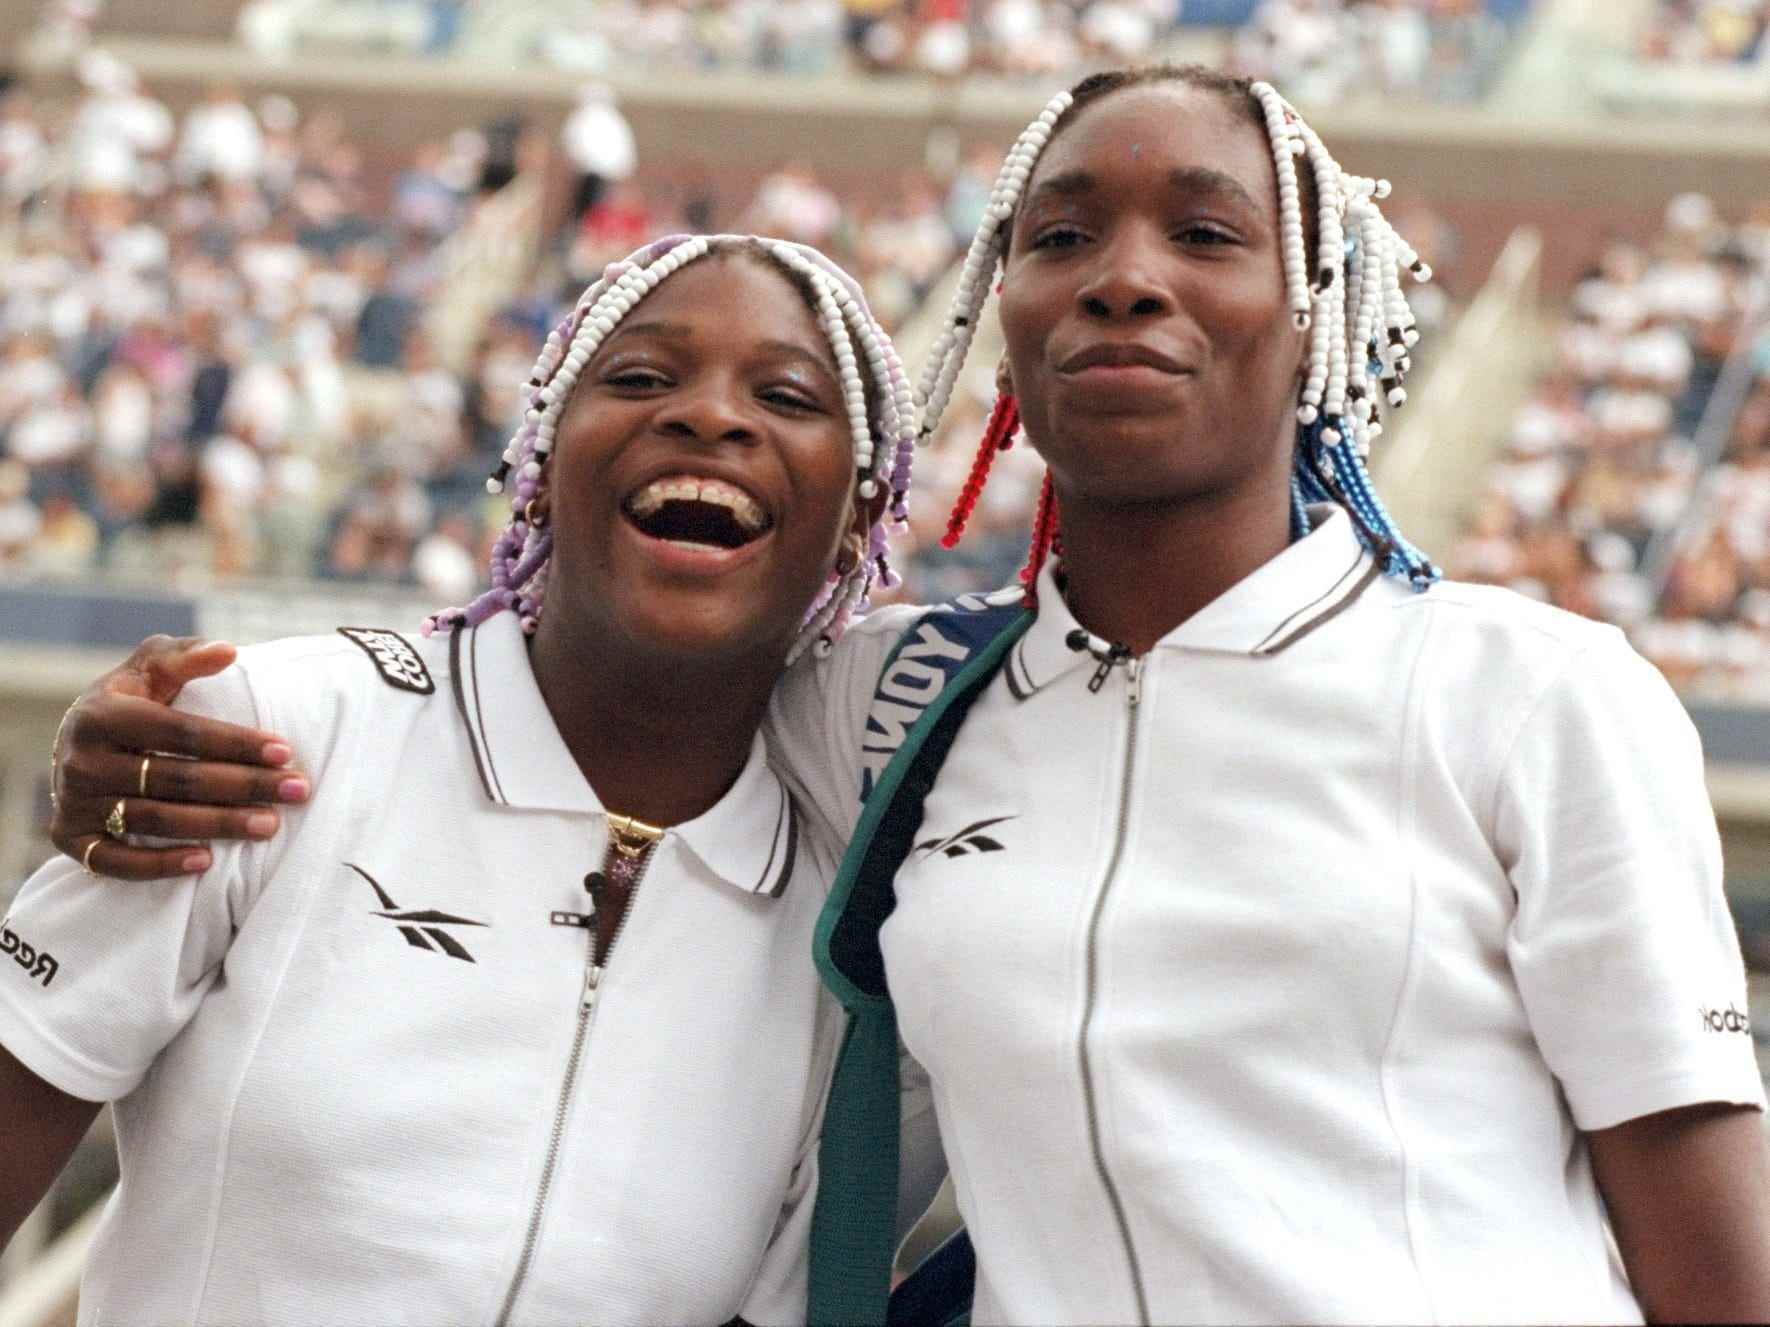 Die tennisspielenden Schwestern Serena und Venus Williams sind am ersten Tag der US Open im Arthur Ashe Stadium in Flushing Meadows, Queens, einsatzbereit.